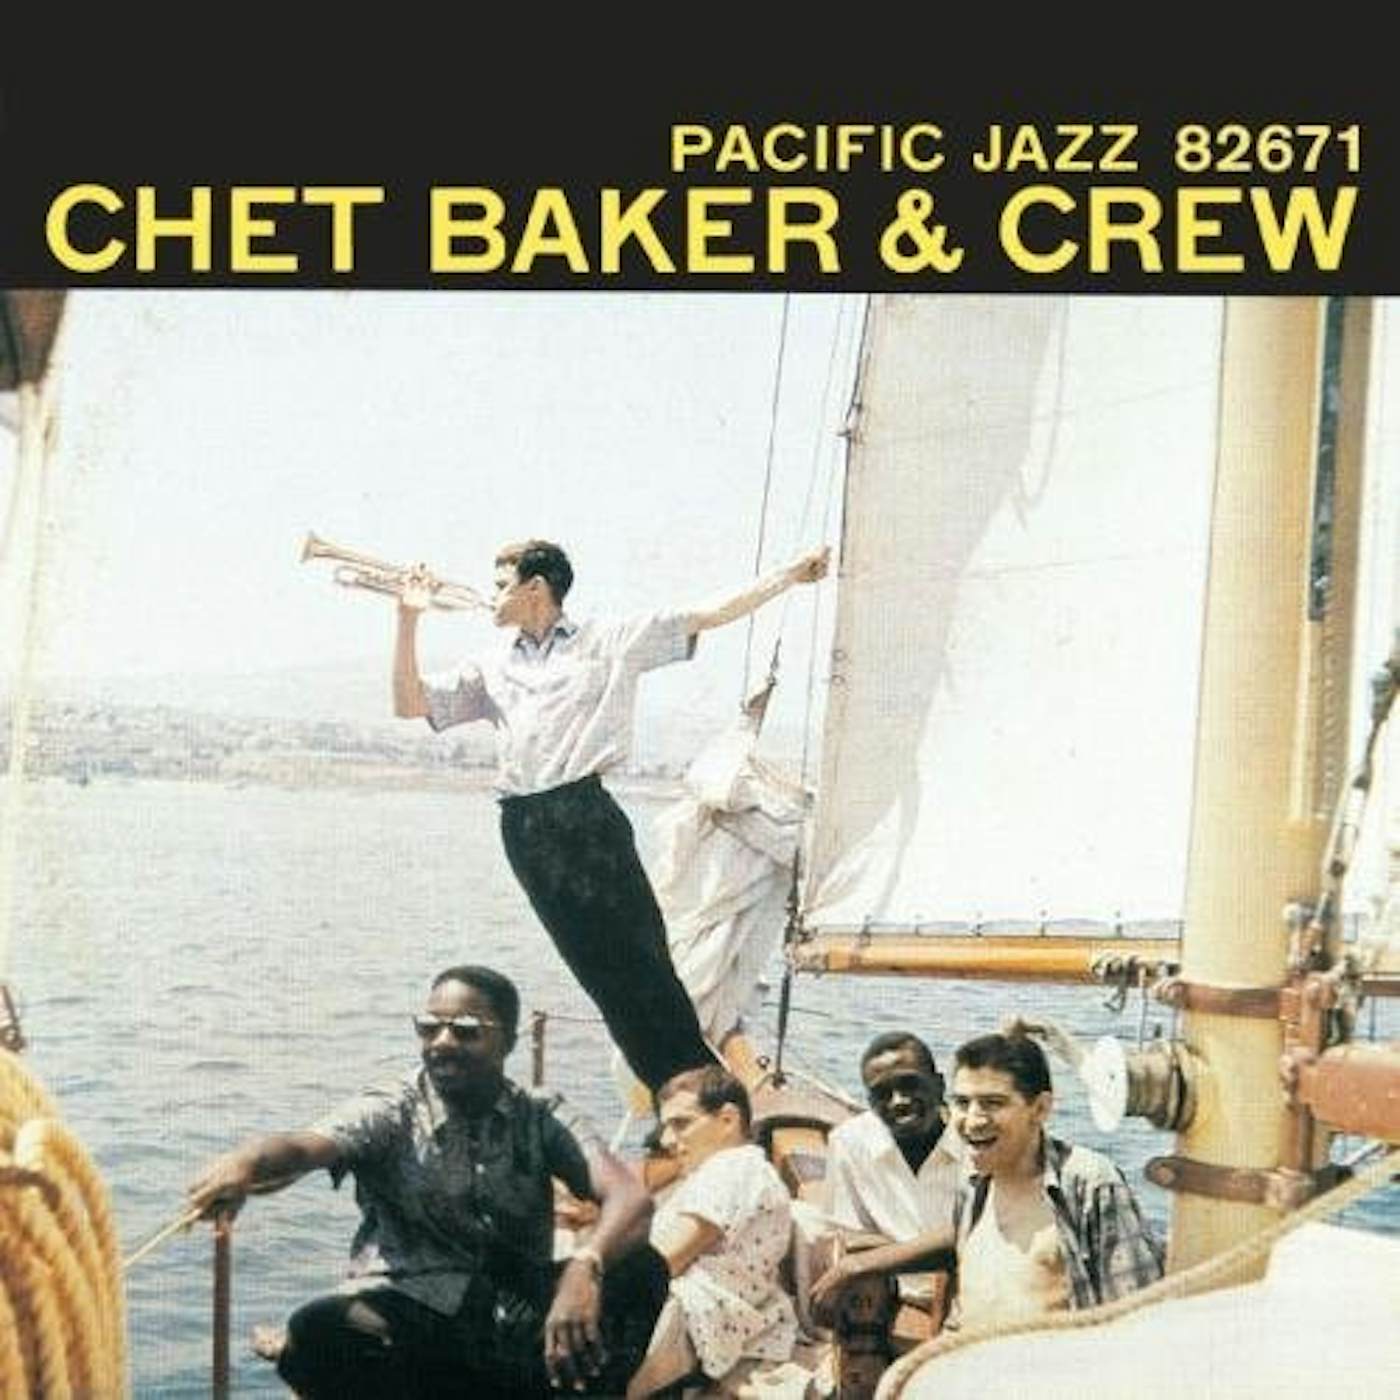 Chet Baker & Crew Vinyl Record